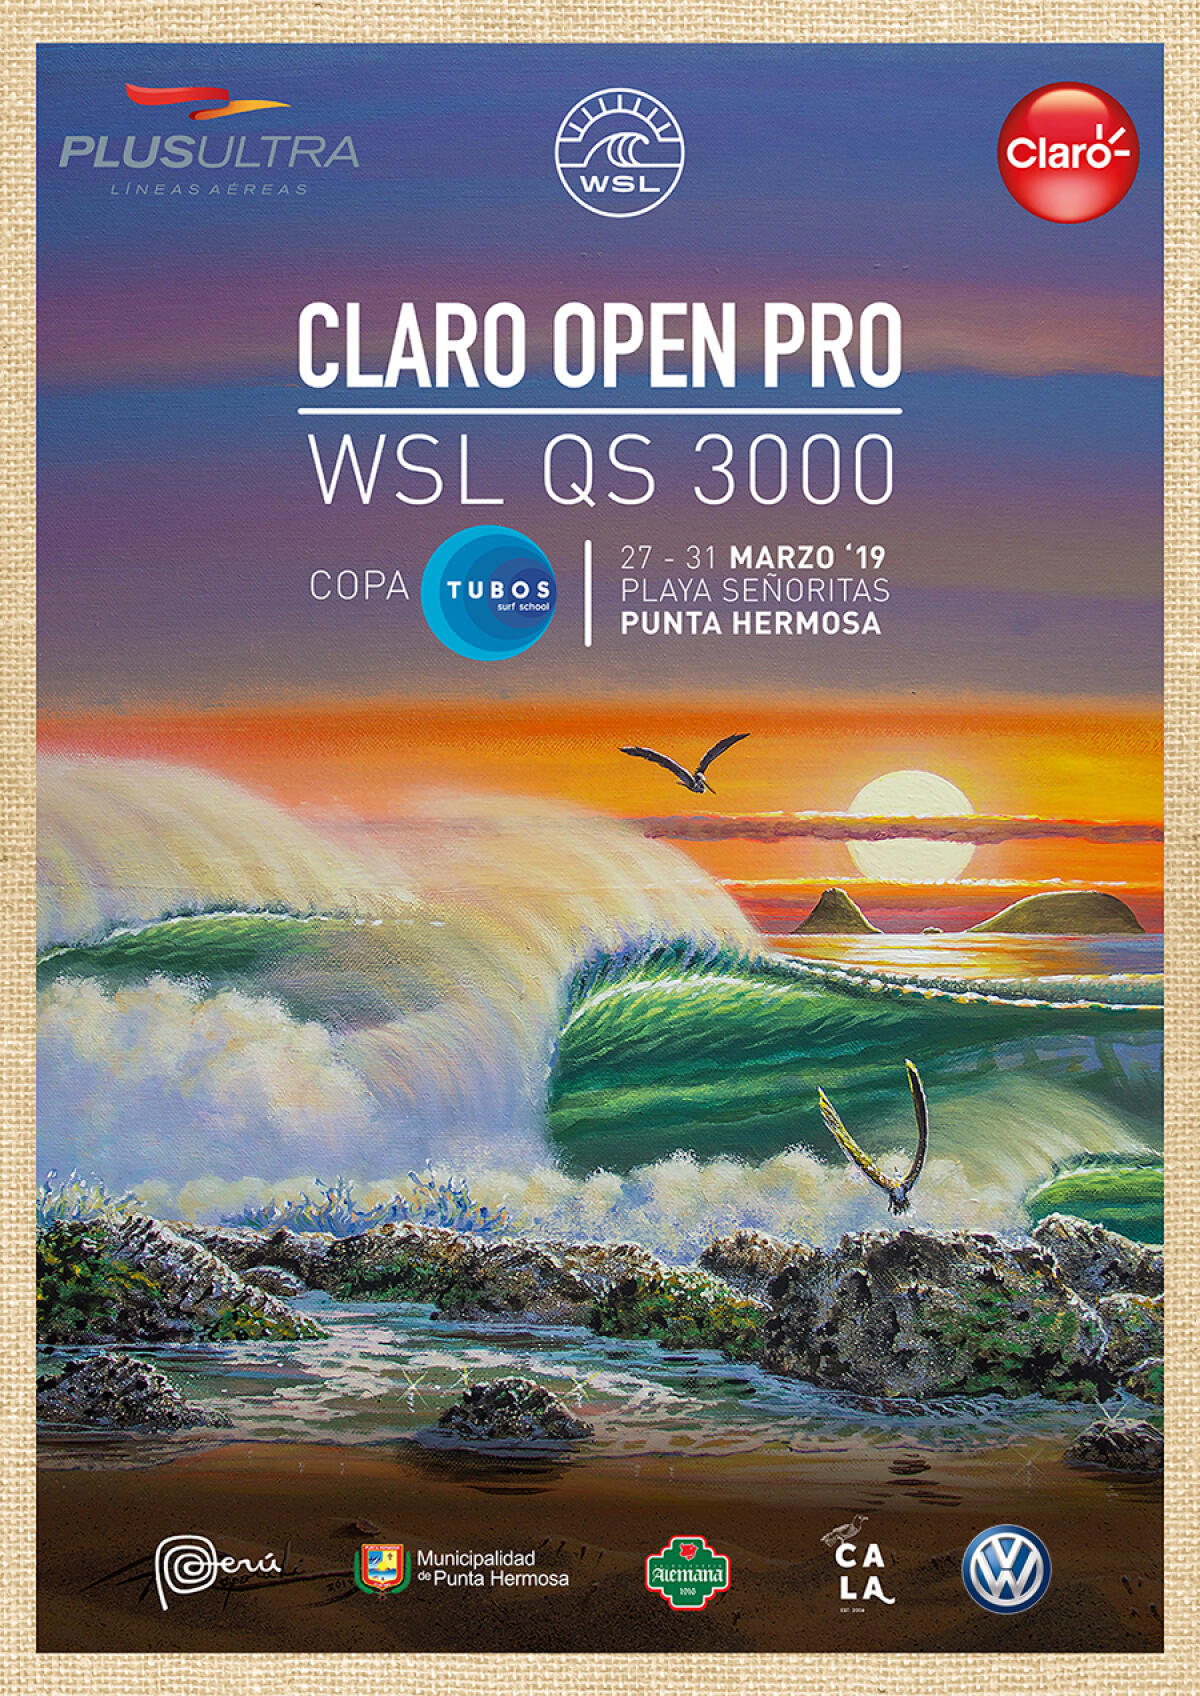 Claro Open Pro | Copa Tubos